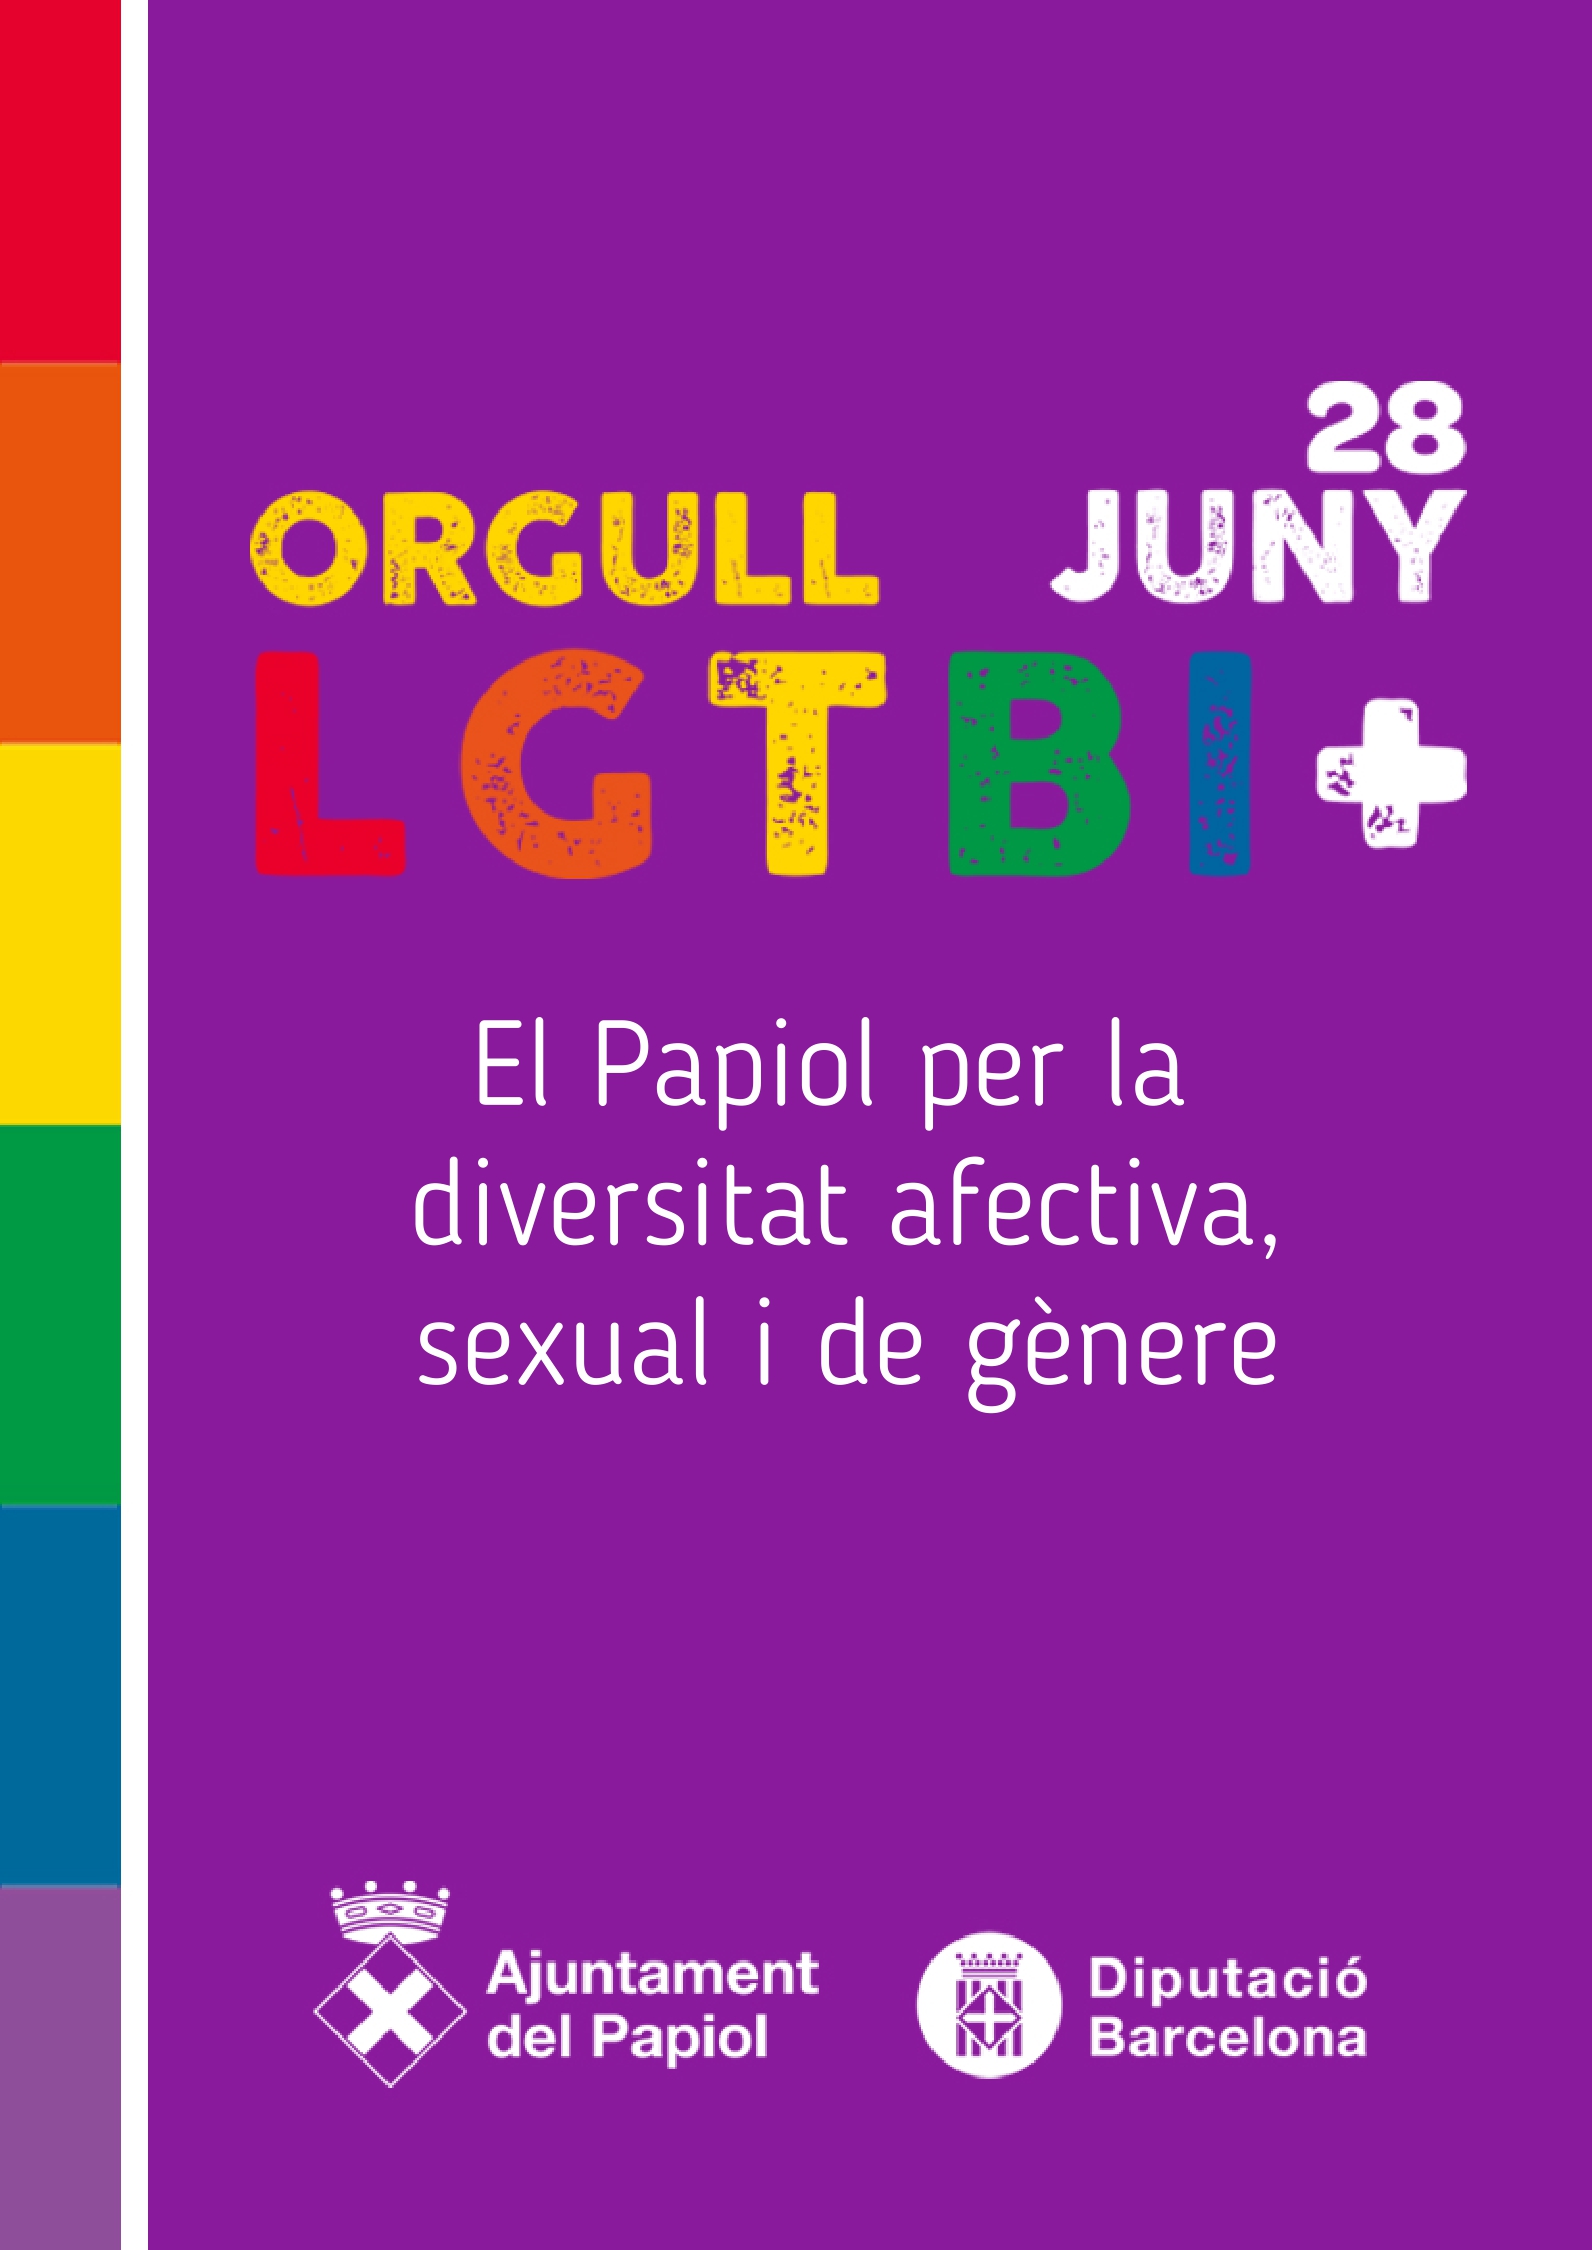 28 de juny, Dia internacional de l'Orgull LGBTI